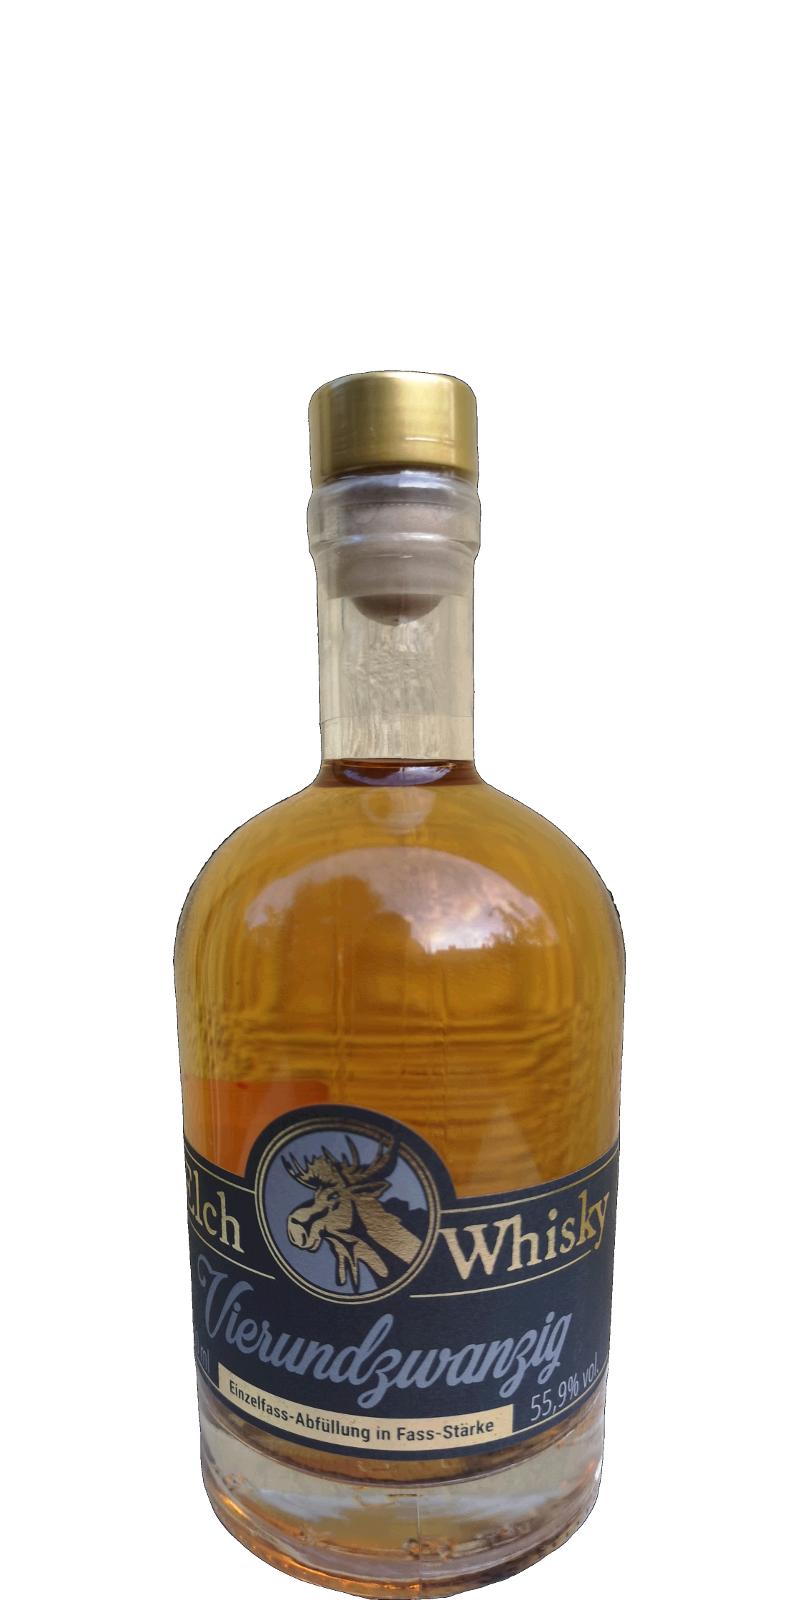 Elch Whisky Vierundzwanzig Bourbon Los 19/12 55.9% 500ml